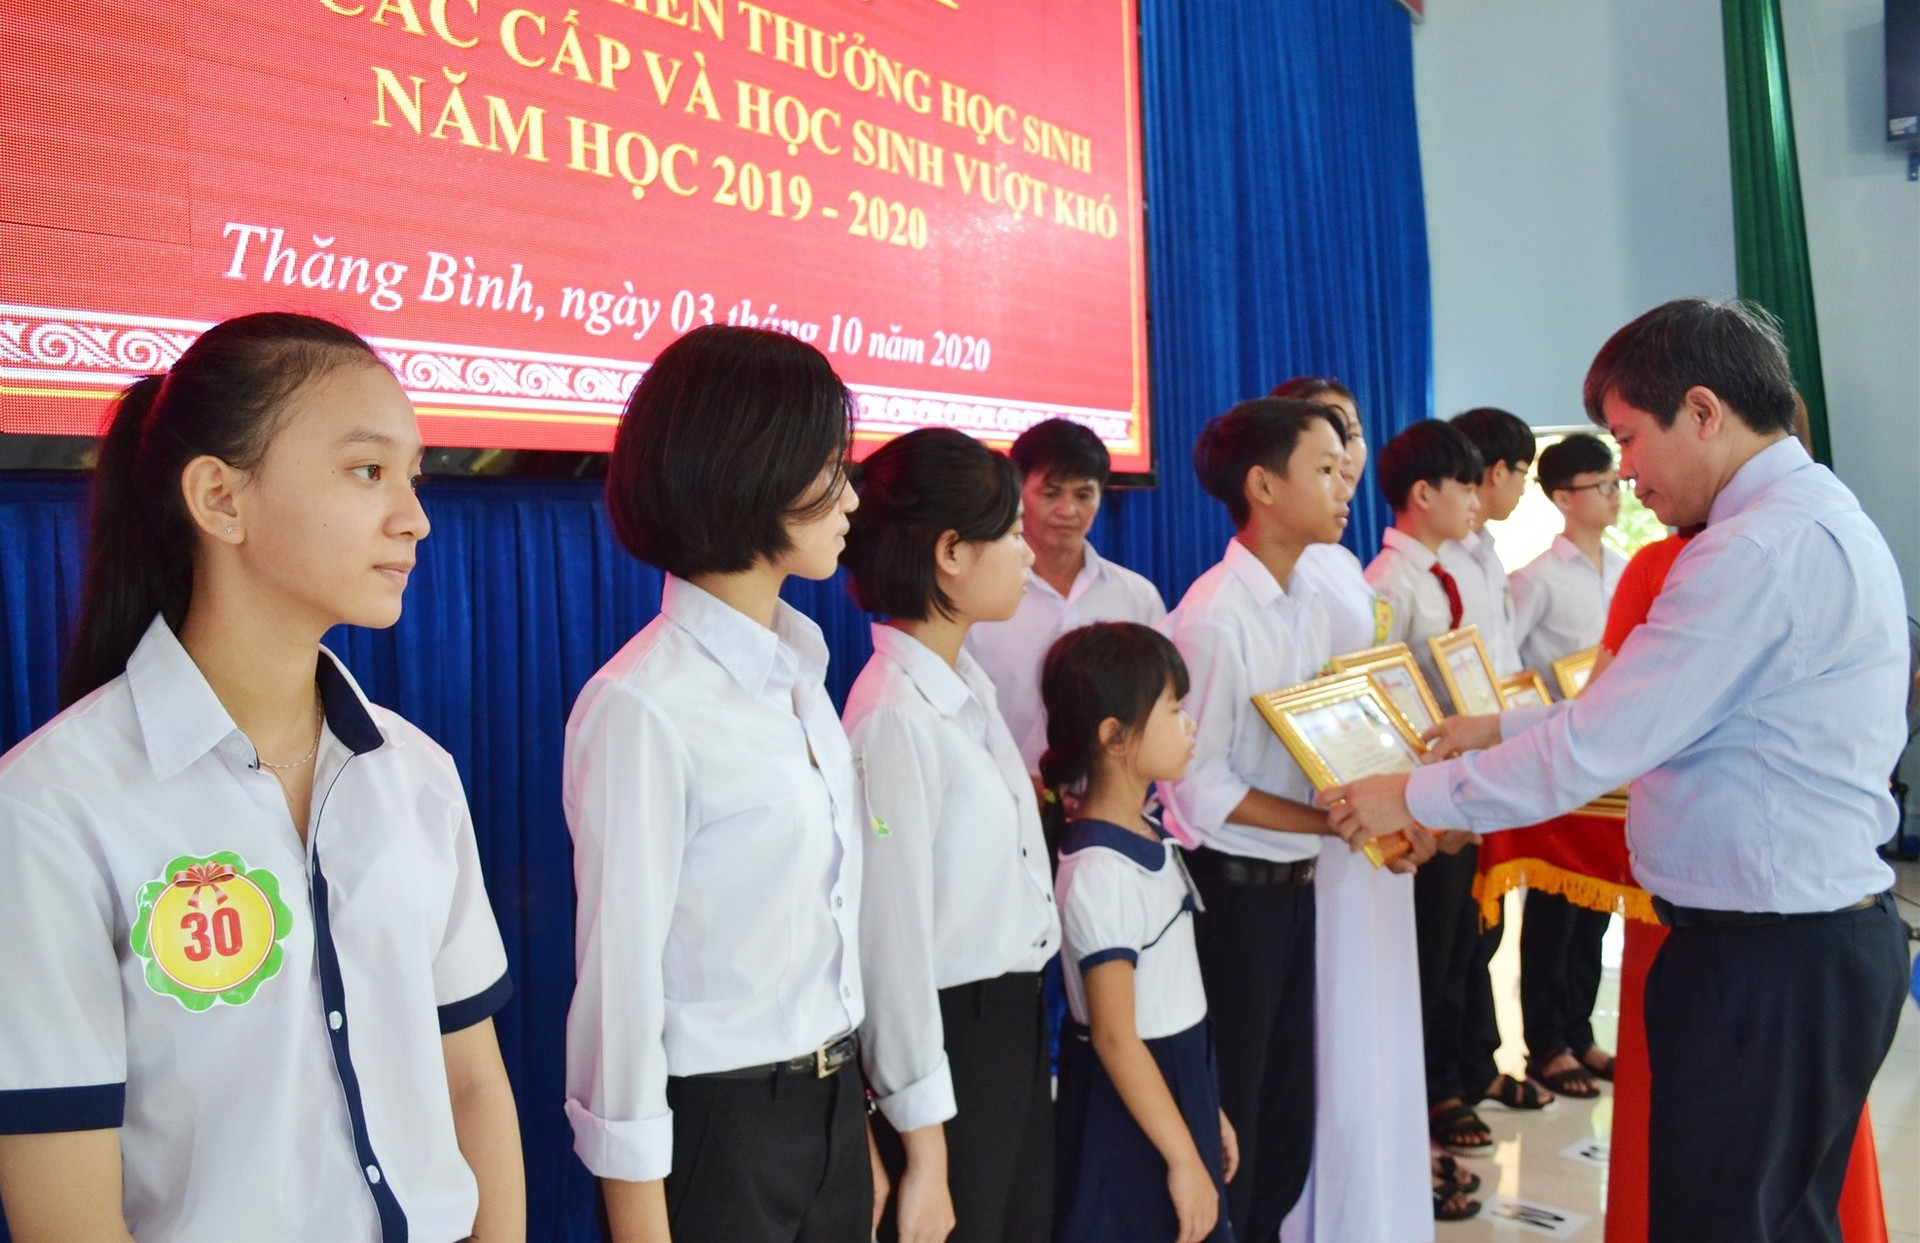 Ông Võ Văn Hùng tuyên dương, khen thưởng học sinh Thăng Bình đã có nhiều thành quả trong học tập. Ảnh: VIỆT NGUYỄN